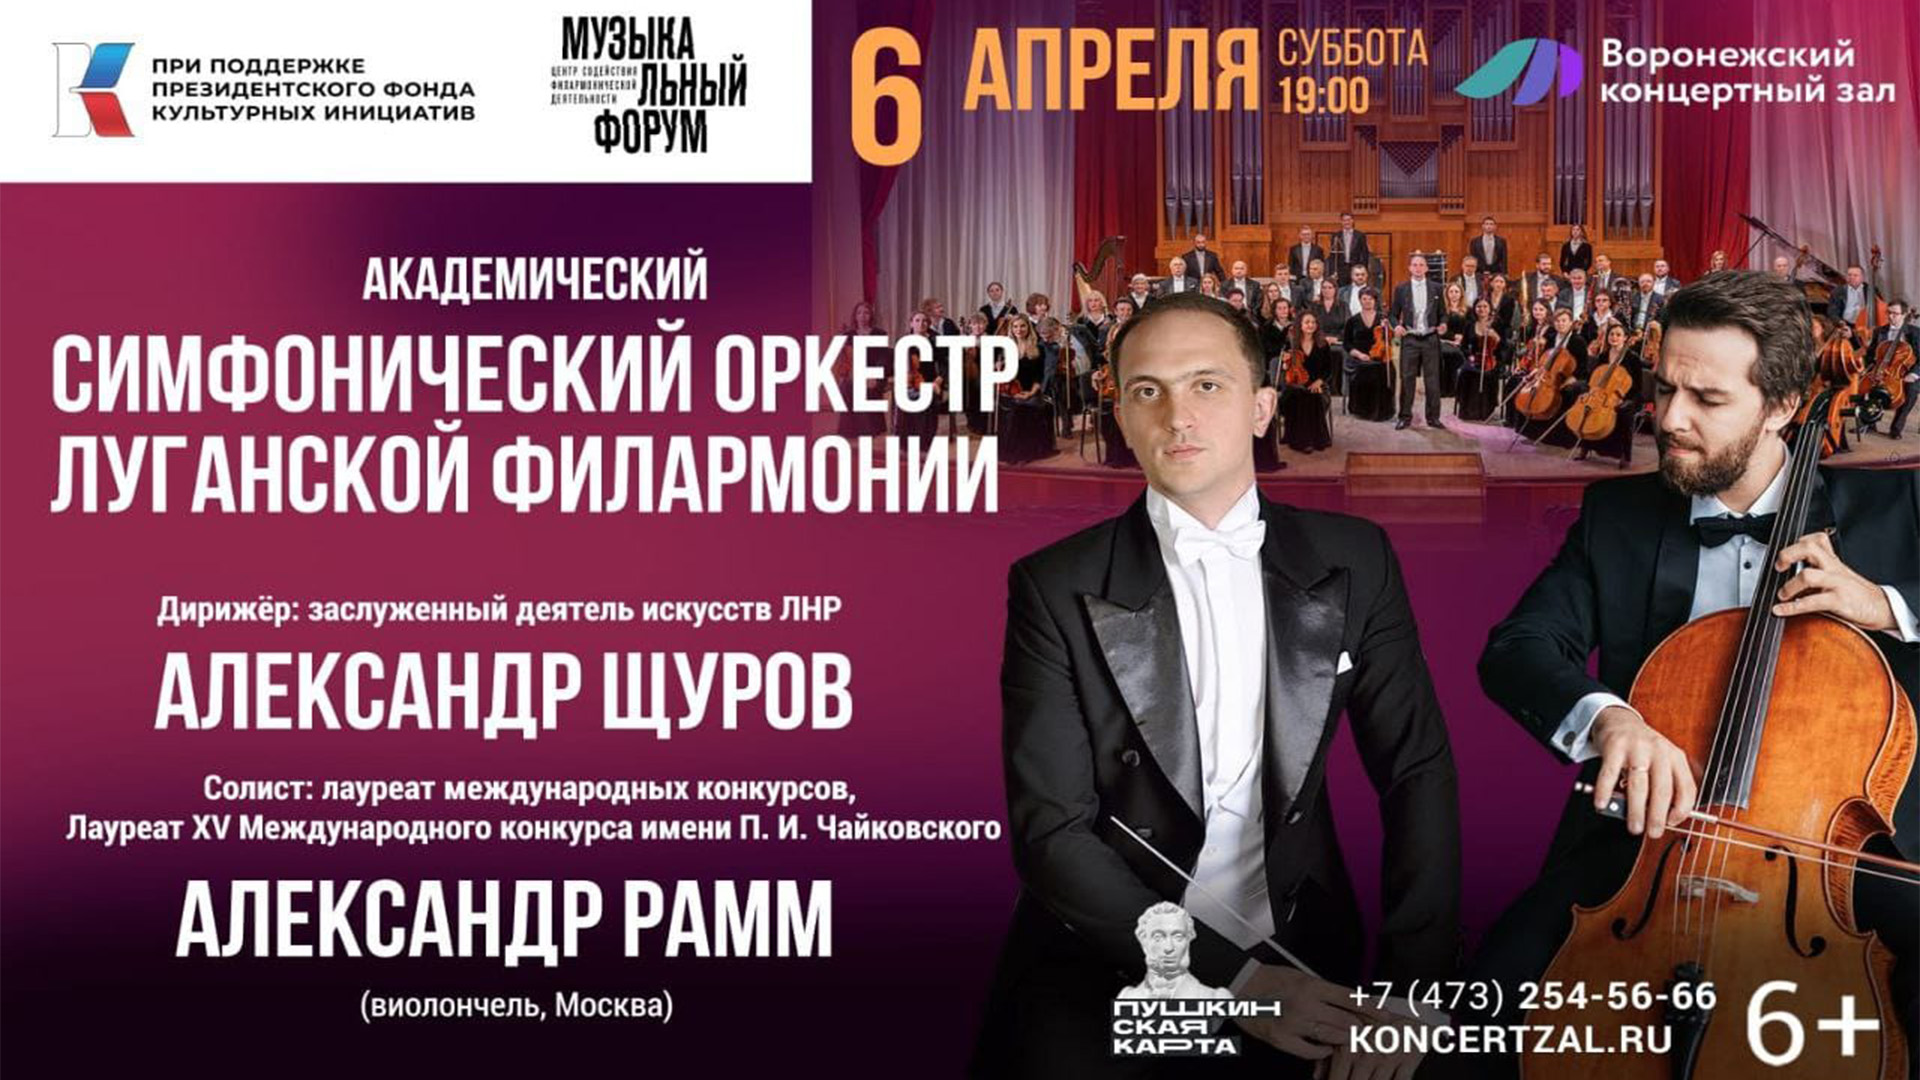 Пресс-конференция Академического симфонического оркестра Луганской филармонии